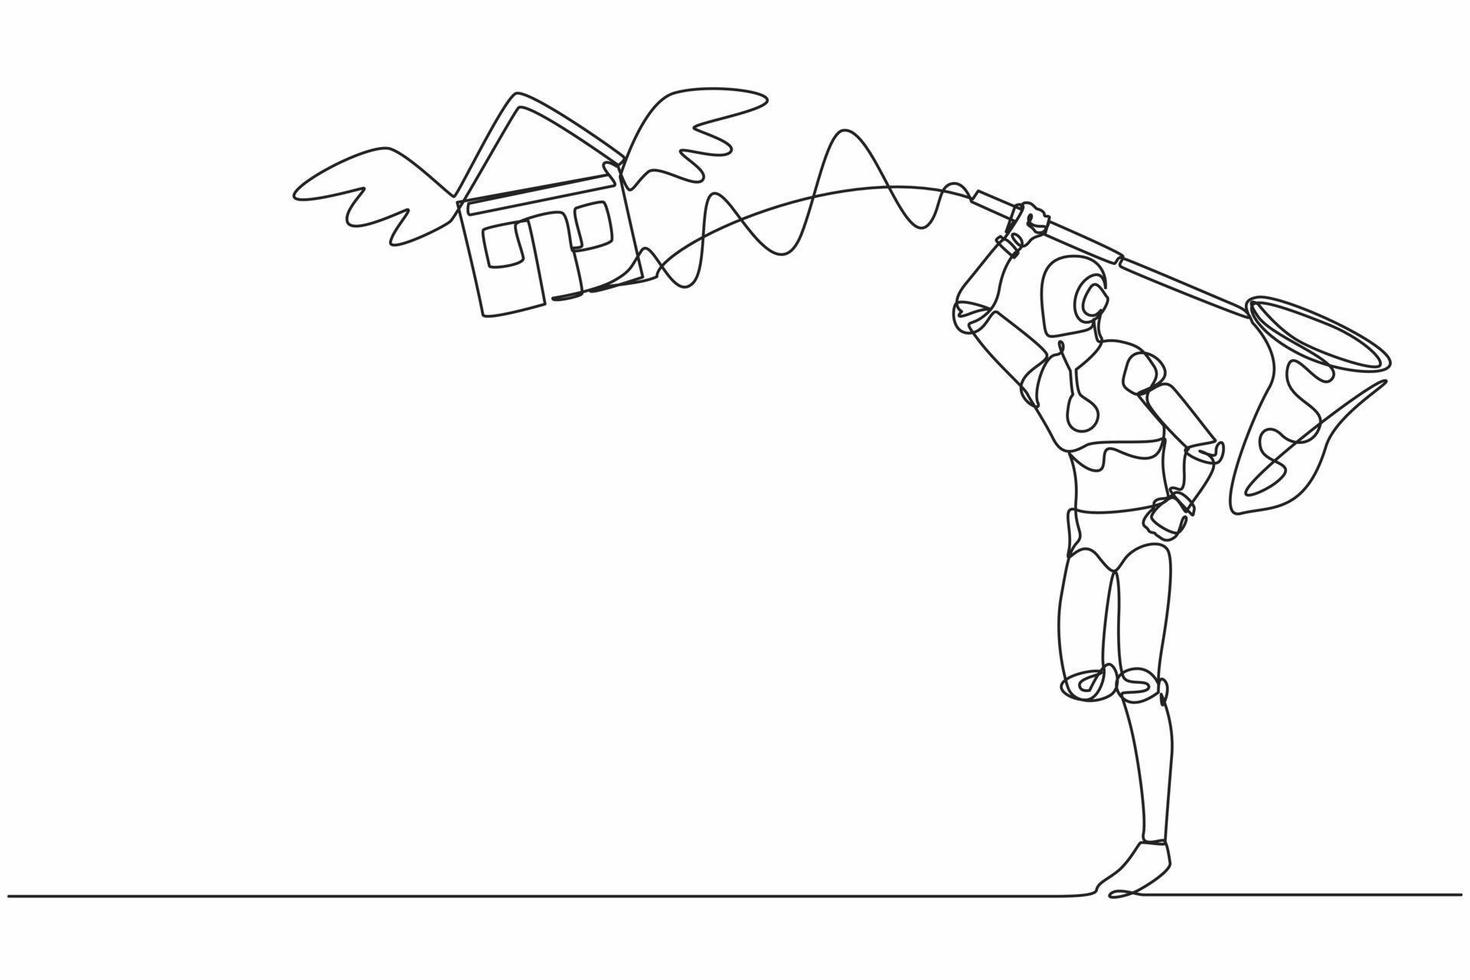 um único robô de desenho de linha tenta pegar a casa voadora com rede de borboletas. aumentos de preços do crédito à habitação. desenvolvimento tecnológico futuro. ilustração em vetor gráfico de desenho de linha contínua